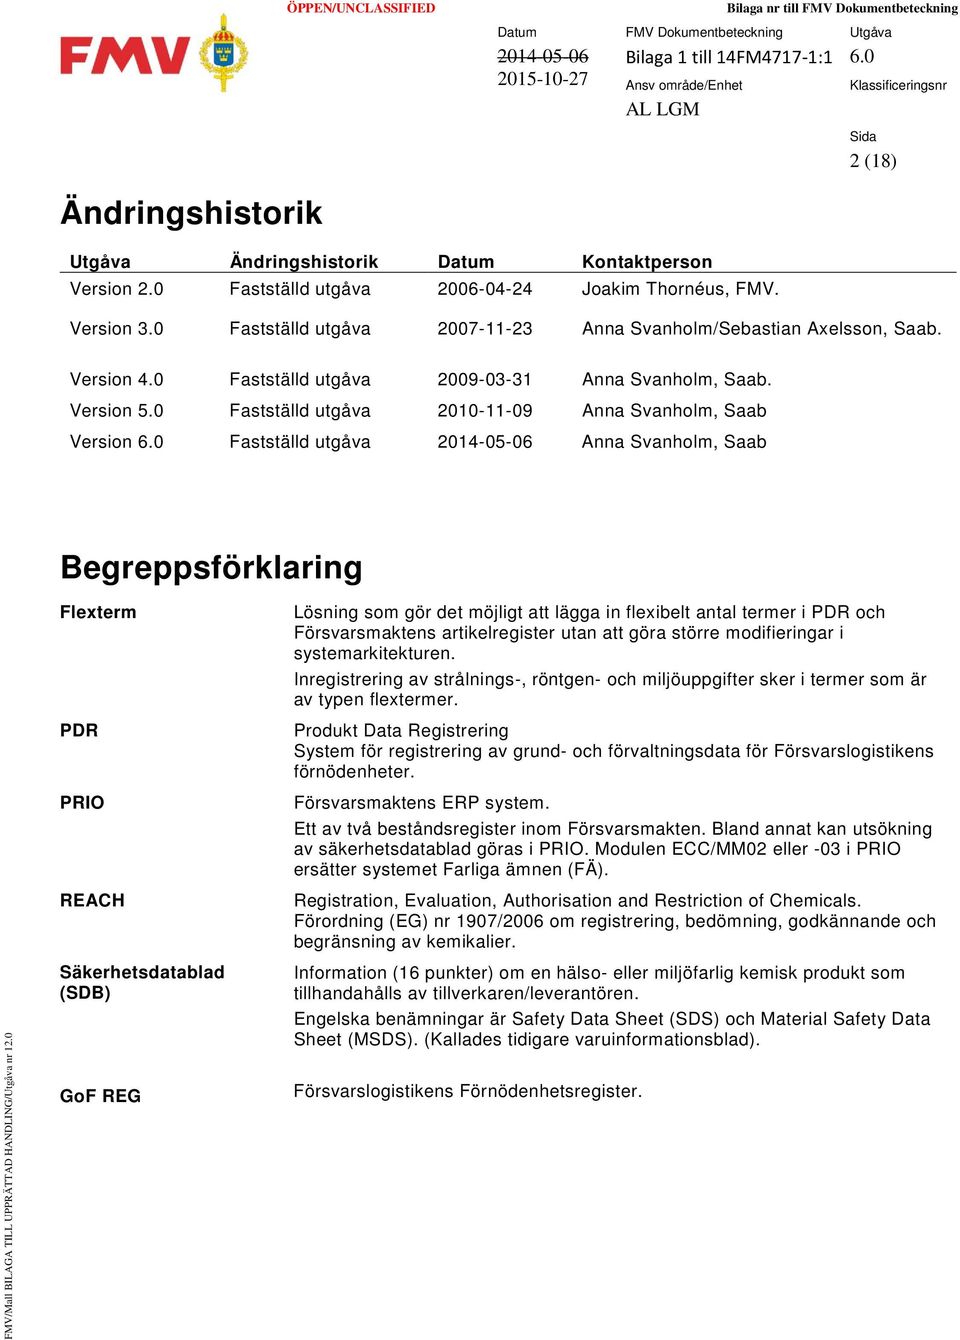 0 Fastställd utgåva 2010-11-09 Anna Svanholm, Saab Version 6.